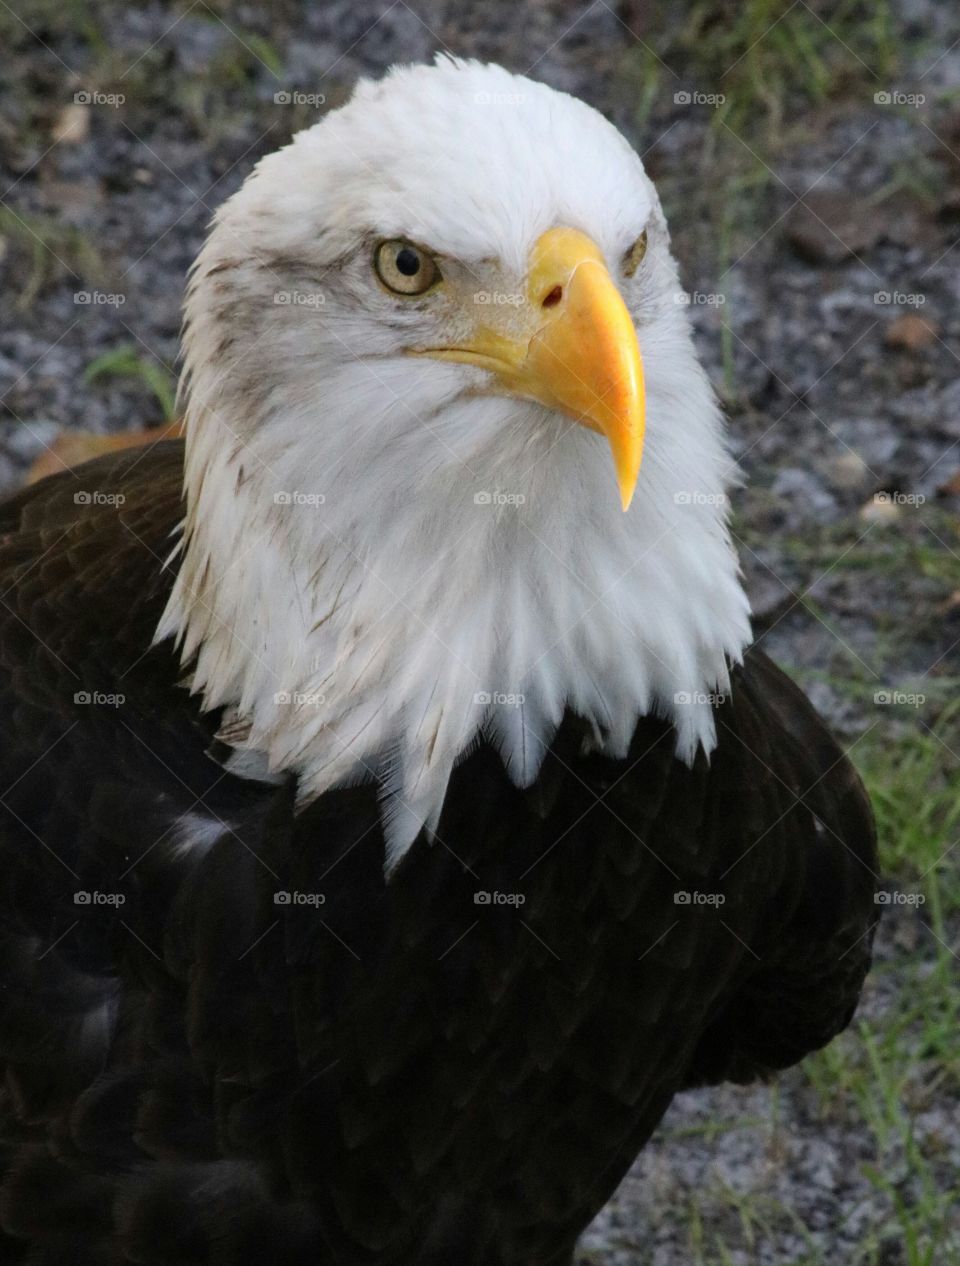 Portrait of a bald eagle